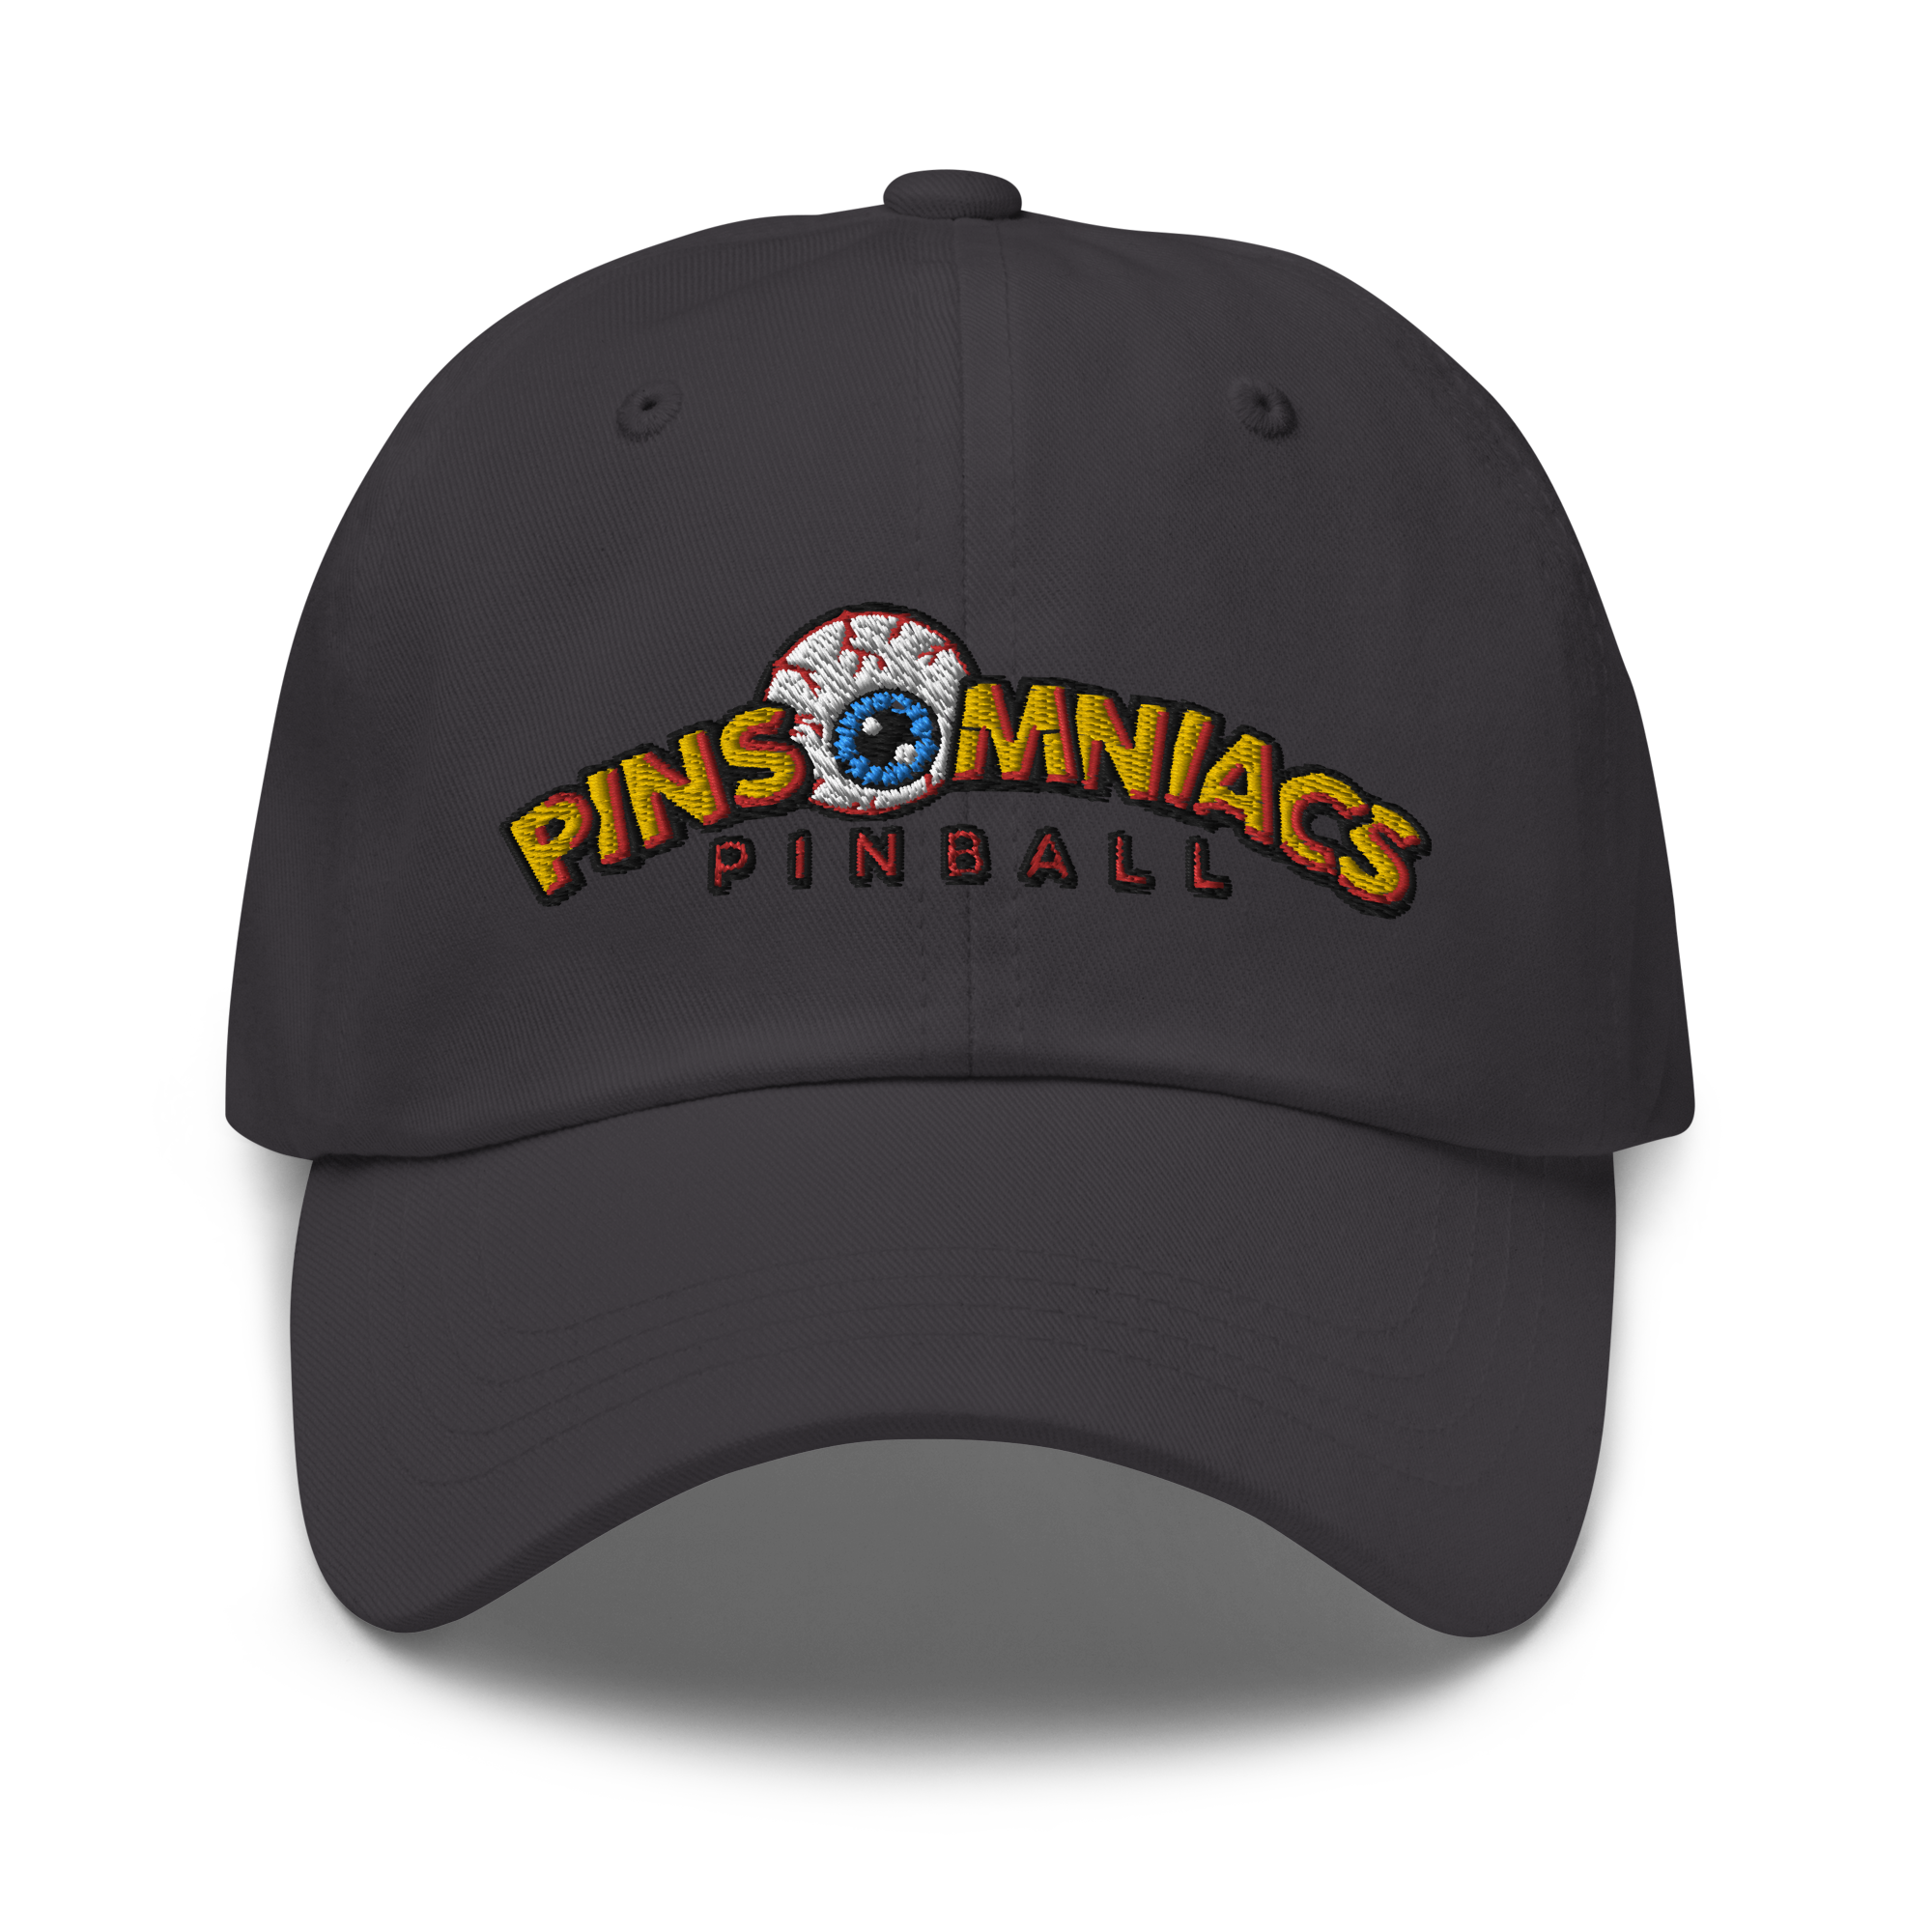 Pinsomniacs - Dad Hat